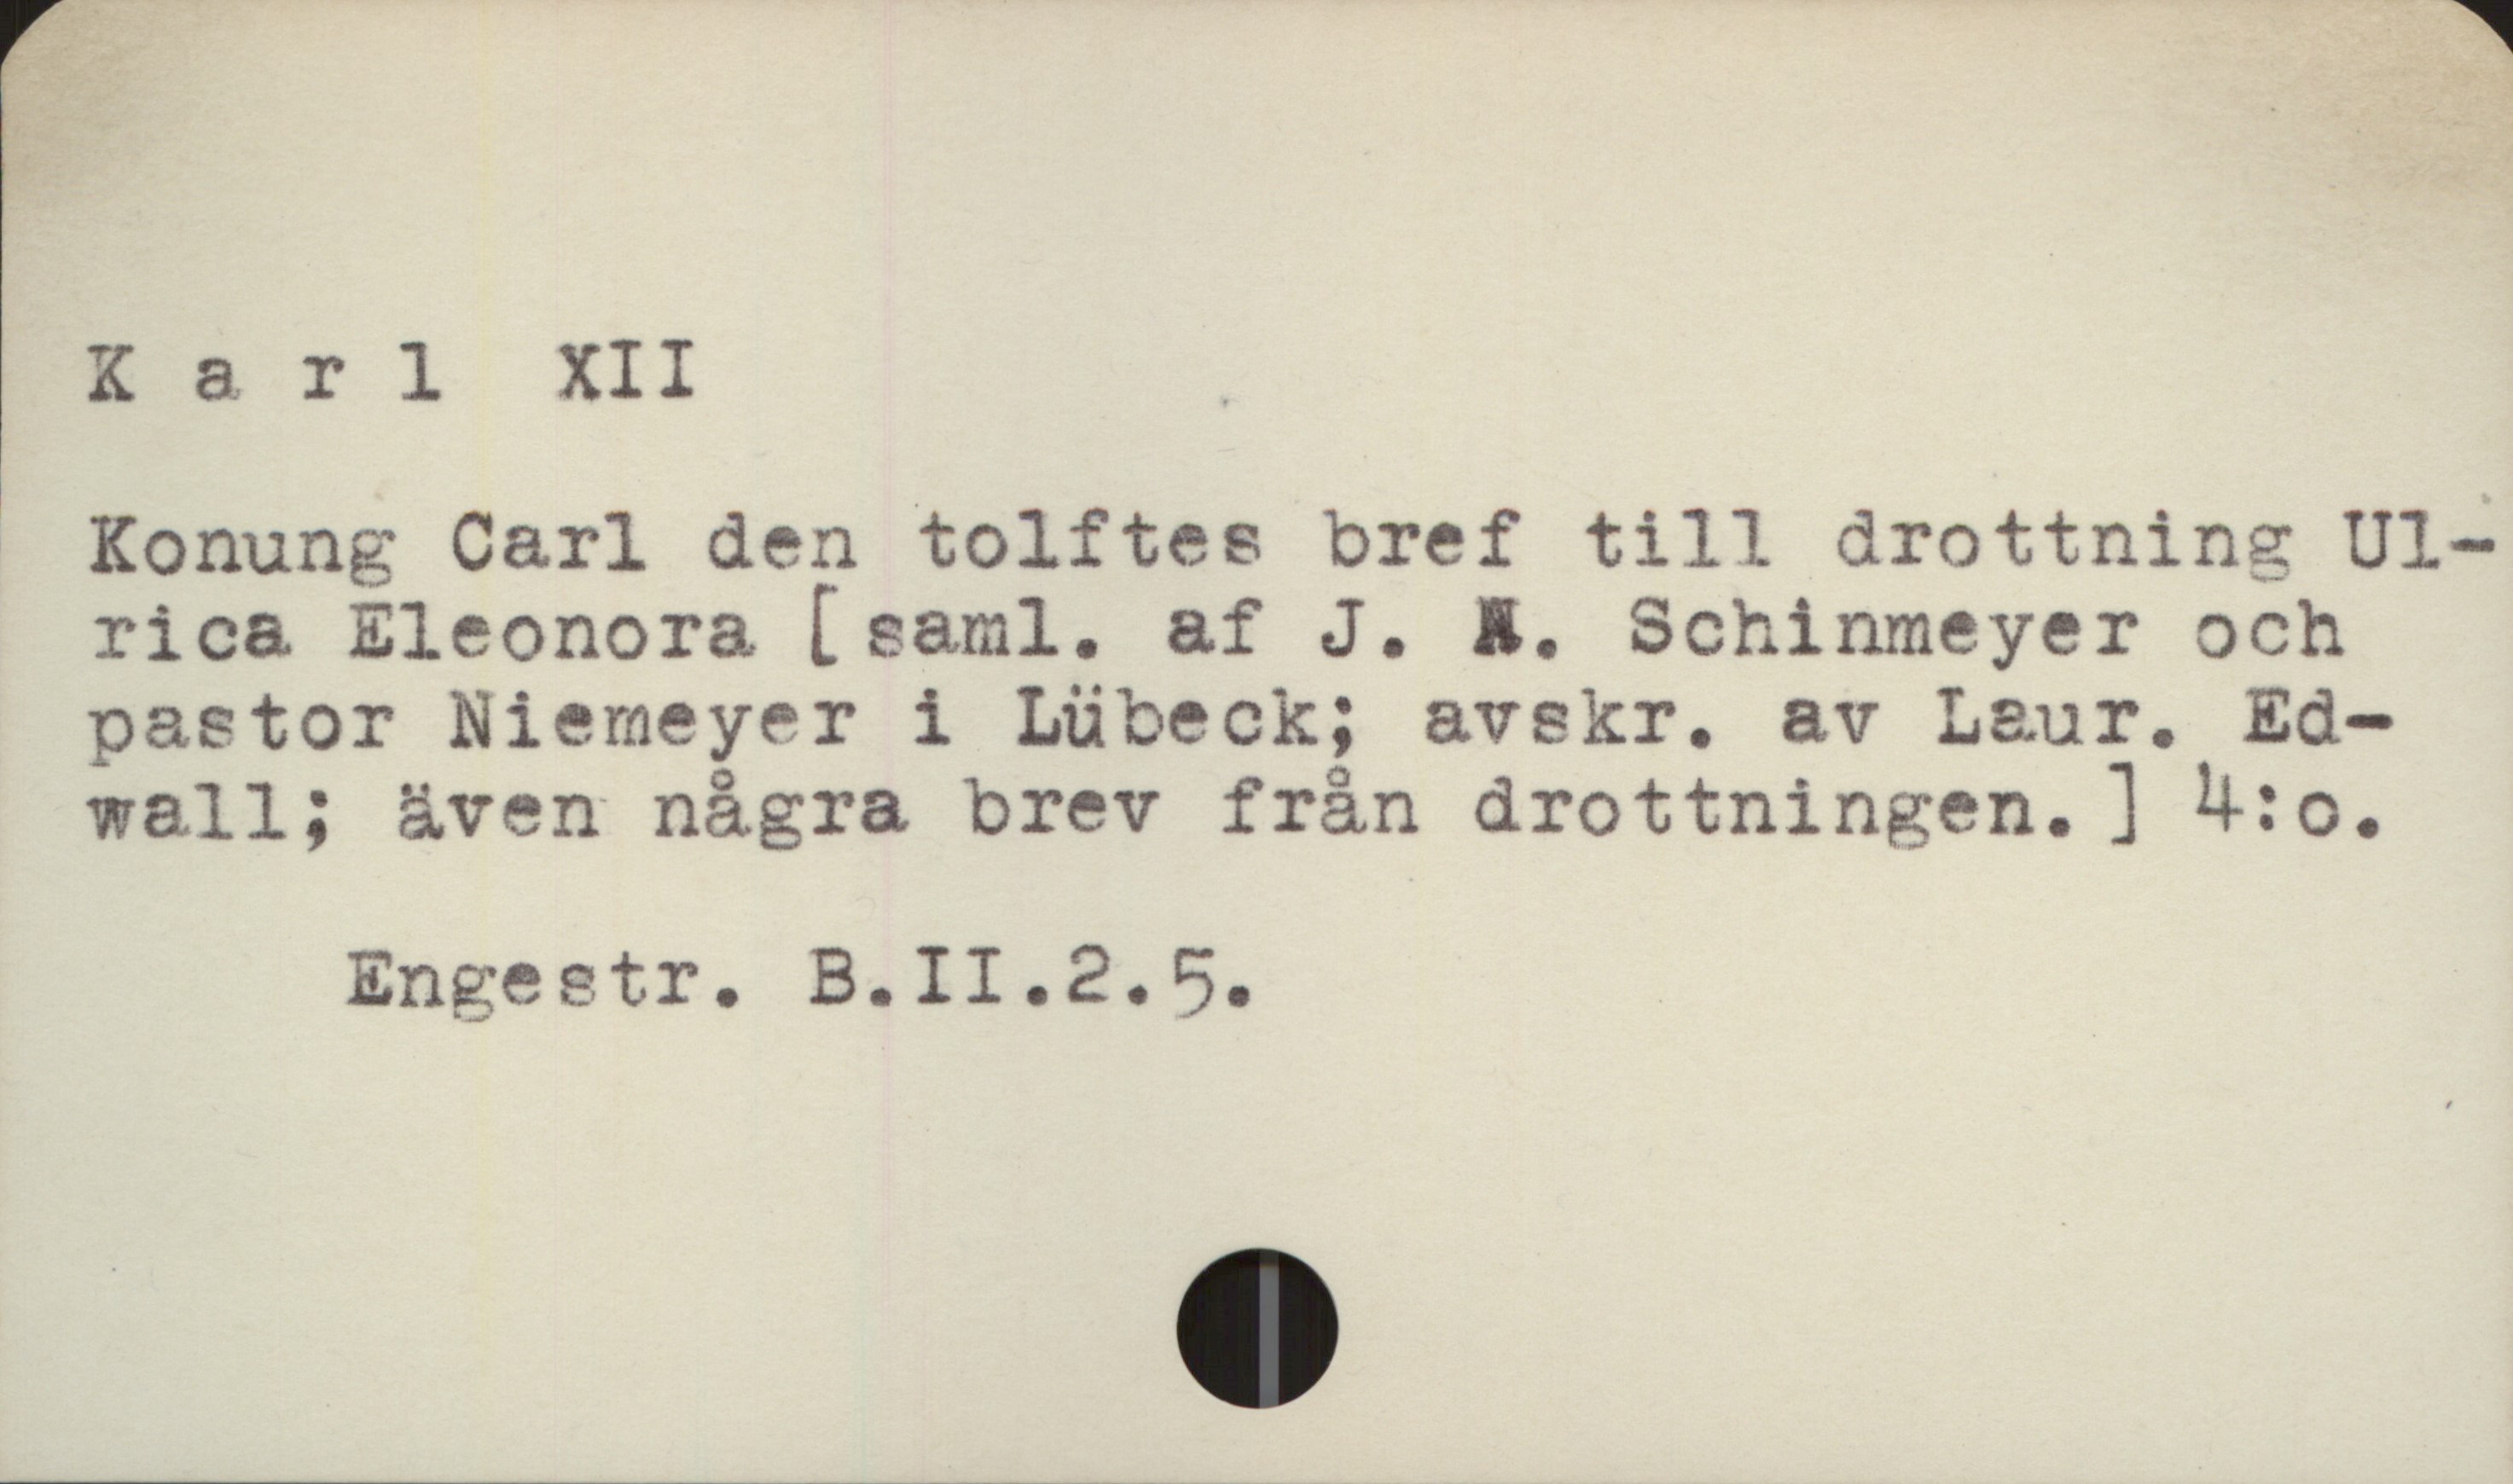  Ä; " 5
Karl XII .
Konung Carl den tolftes bref till drottning Ul-
rica Eleonora [ saml. af J. &. Schinmeyer och
pastor Niemeyer i Lübeck; avskr. av Laur. Ed-
wall; även några brev från drottningen. ] M:o.
Engeetr. B.II.2.D5,.

